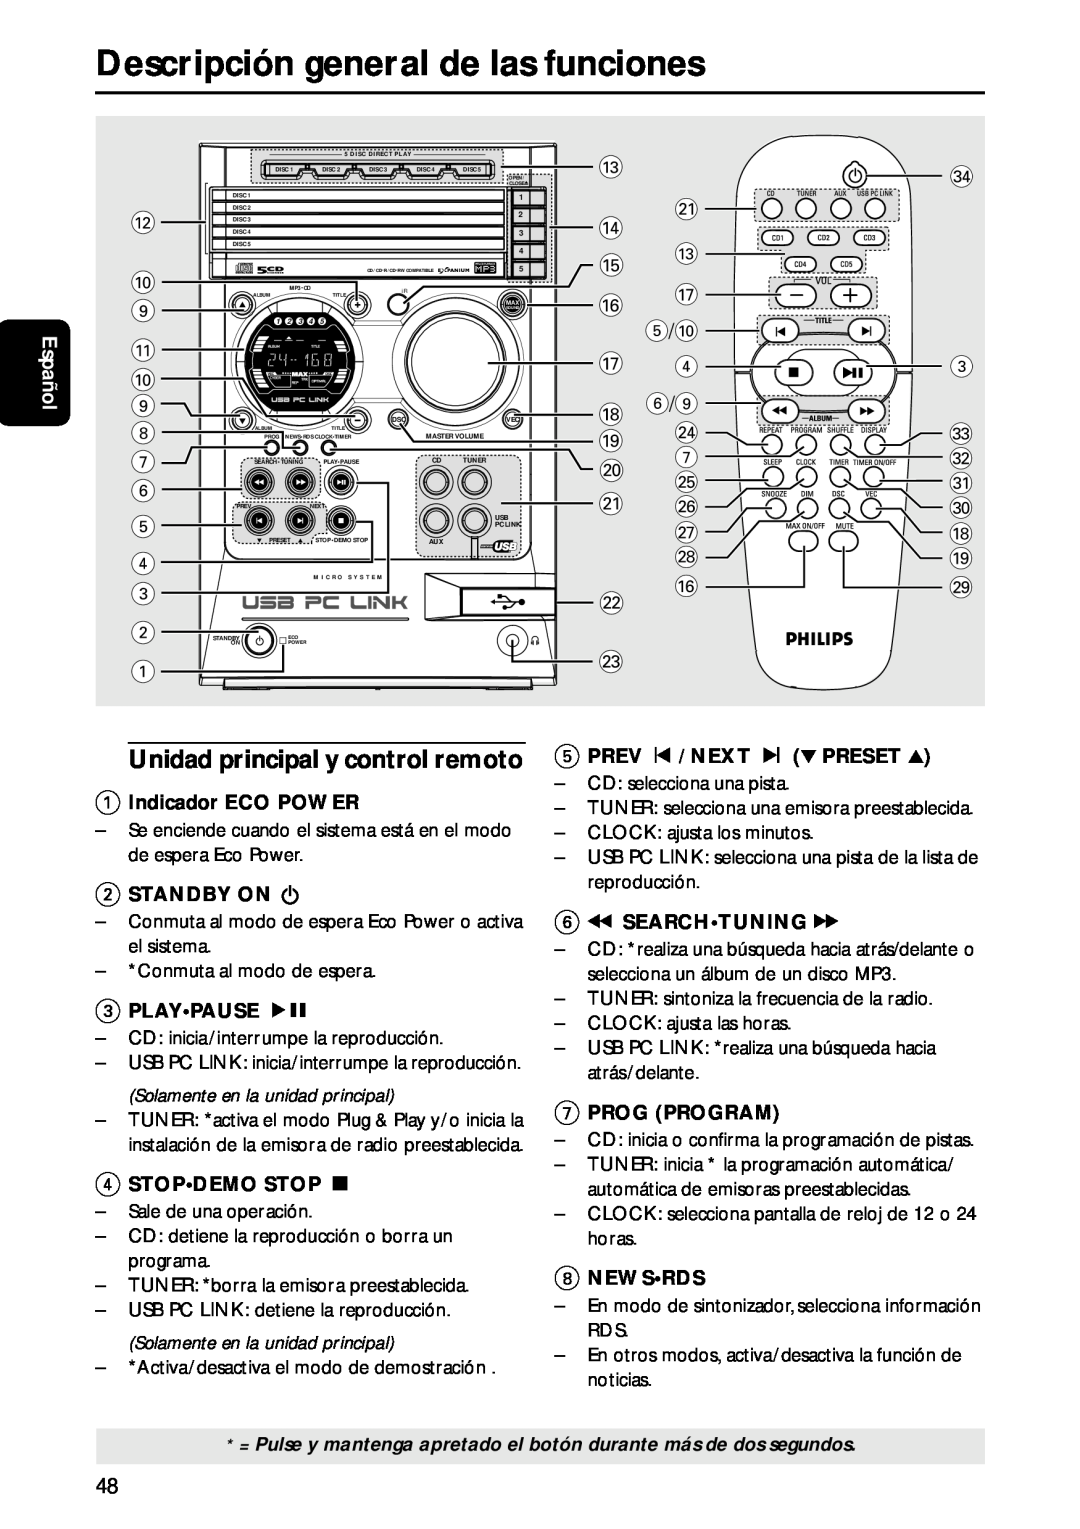 Philips MC-M570 manual Descripción general de las funciones, Unidad principal y control remoto 